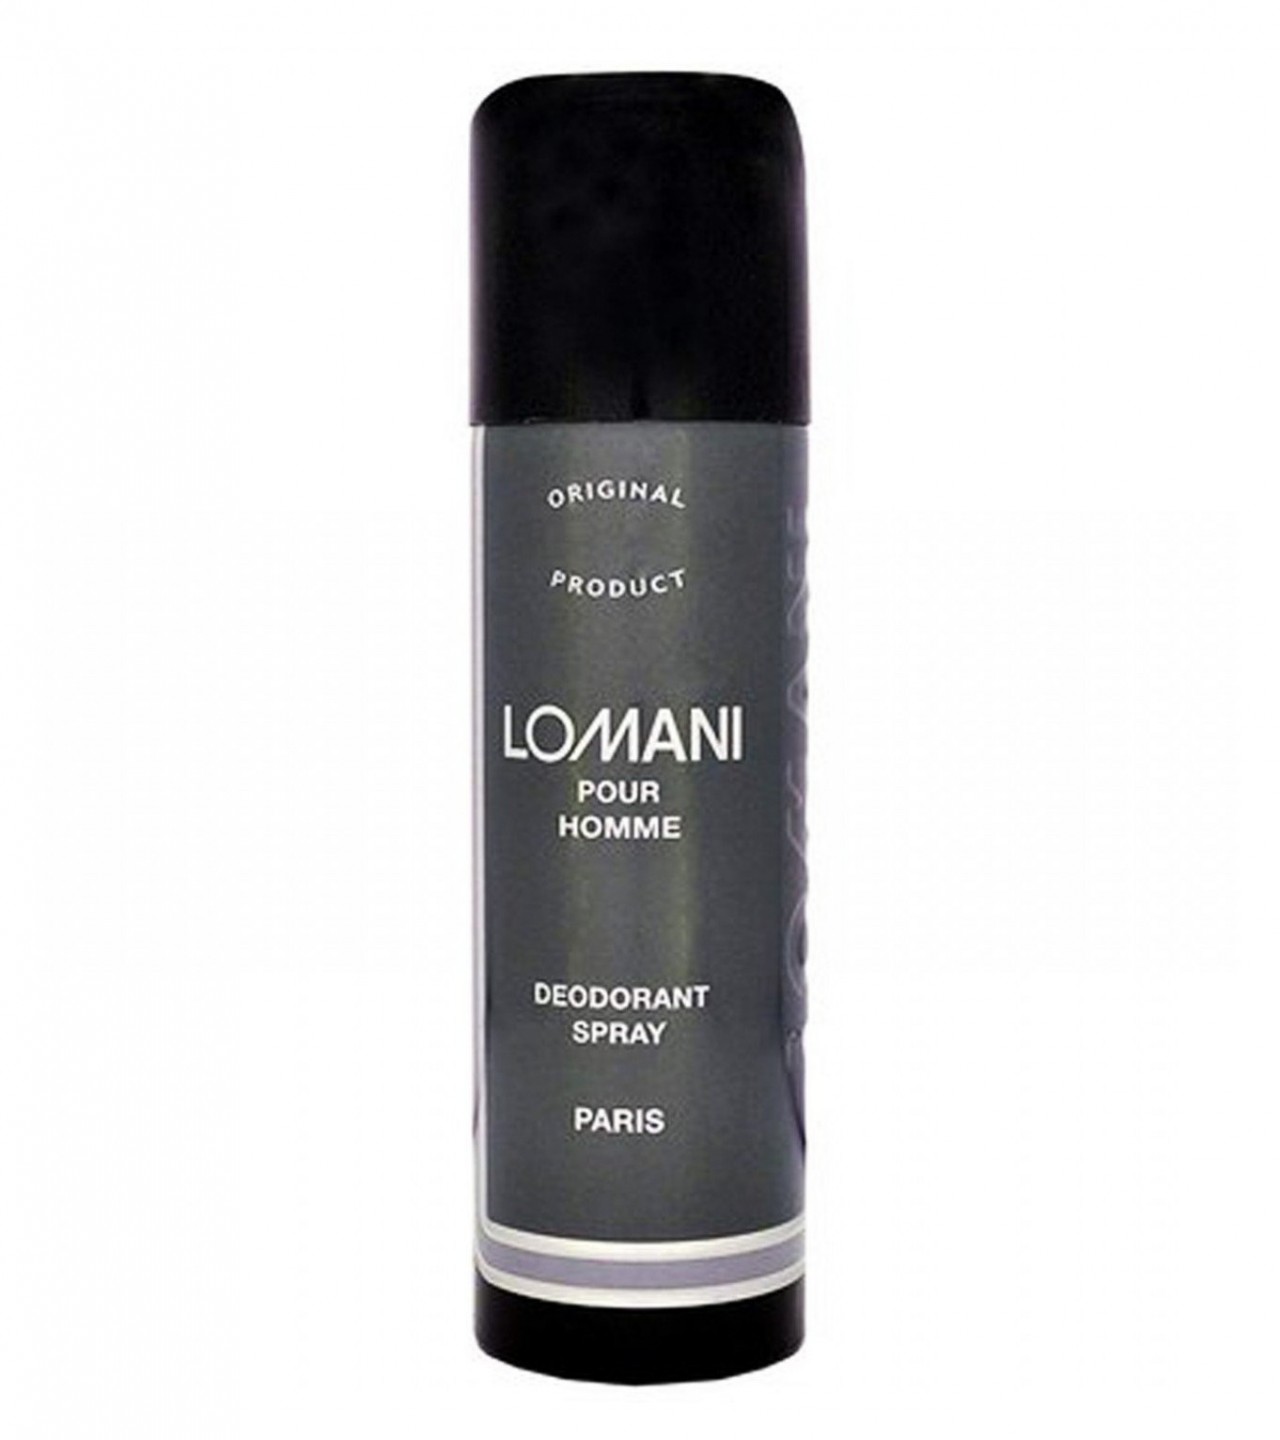 Lomani Pour Homme Body Spray for Men - 200 ml